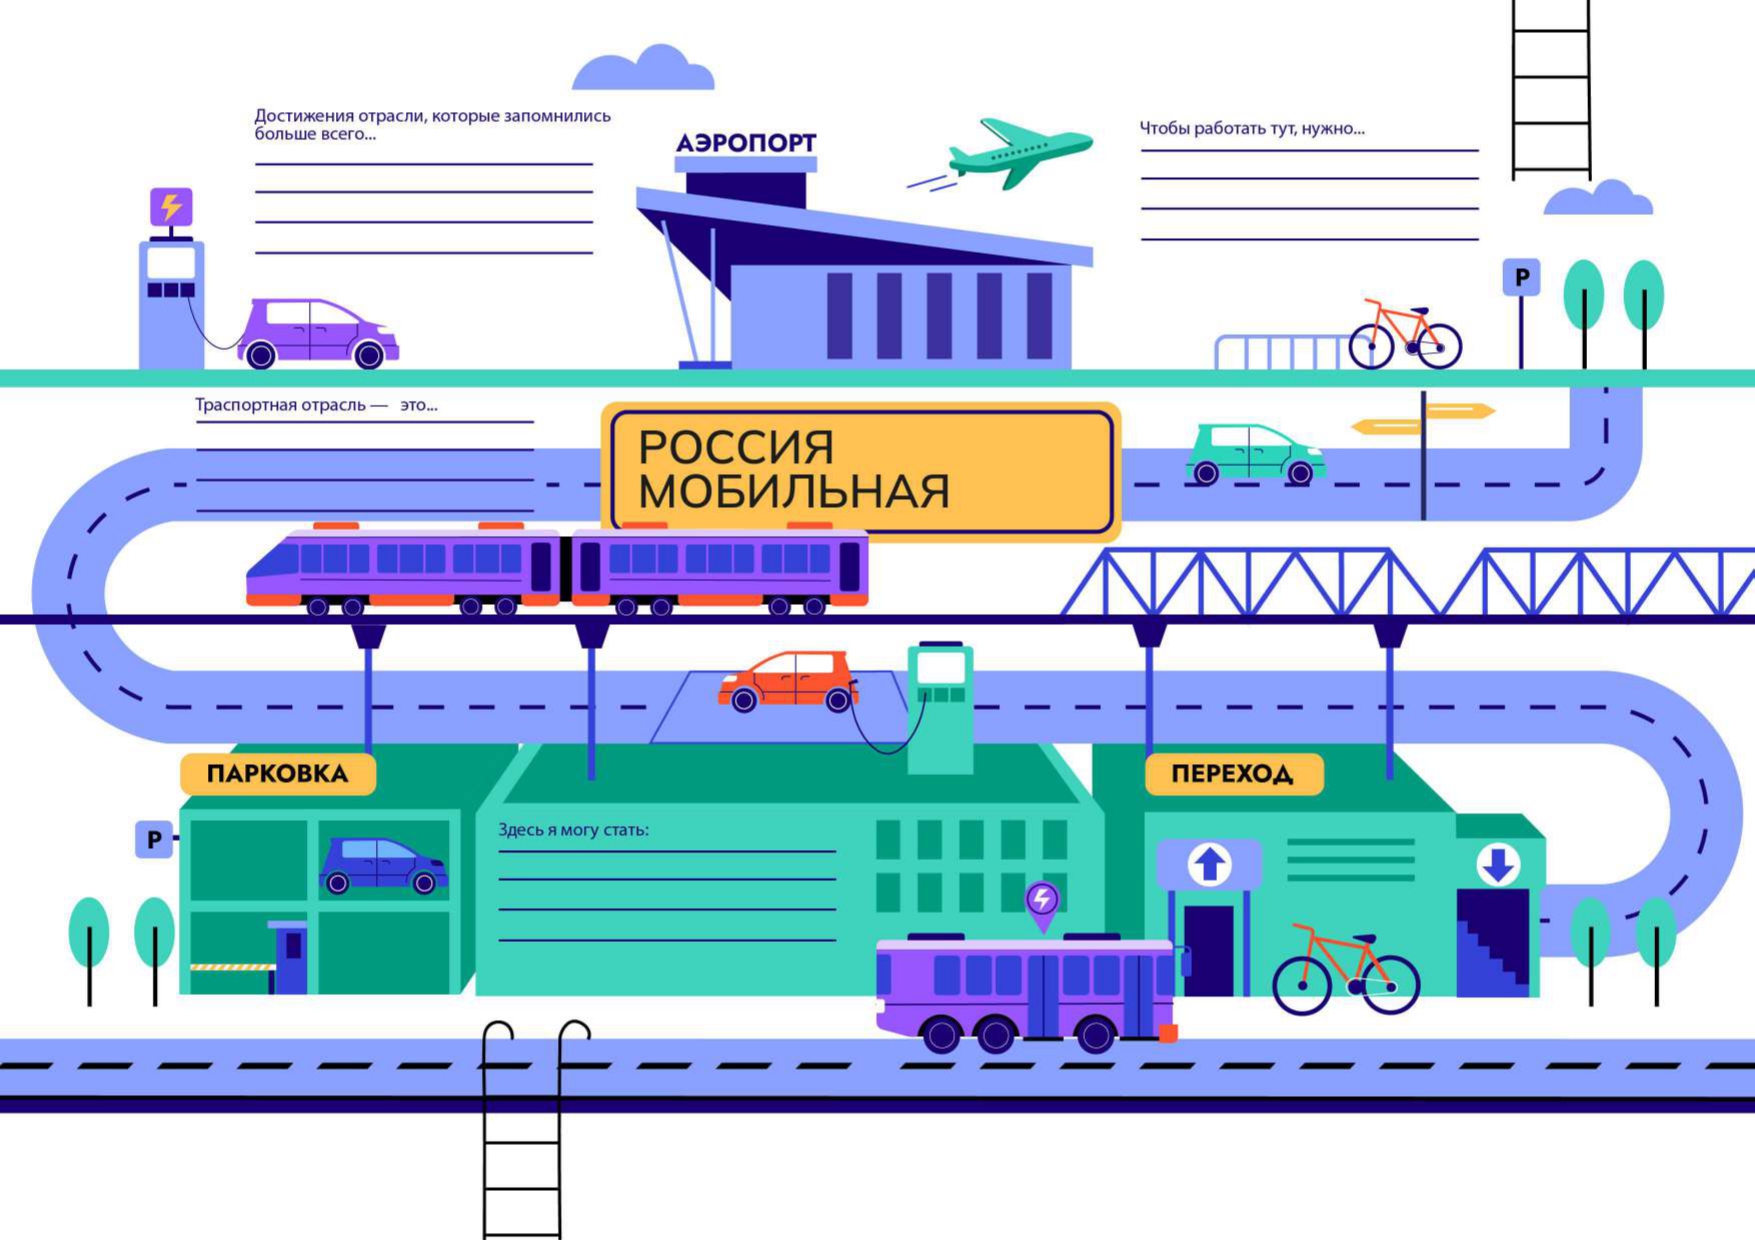 8 февраля - профориентационное занятие «Россия мобильная: узнаю о профессиях и достижениях в транспортной отрасли».